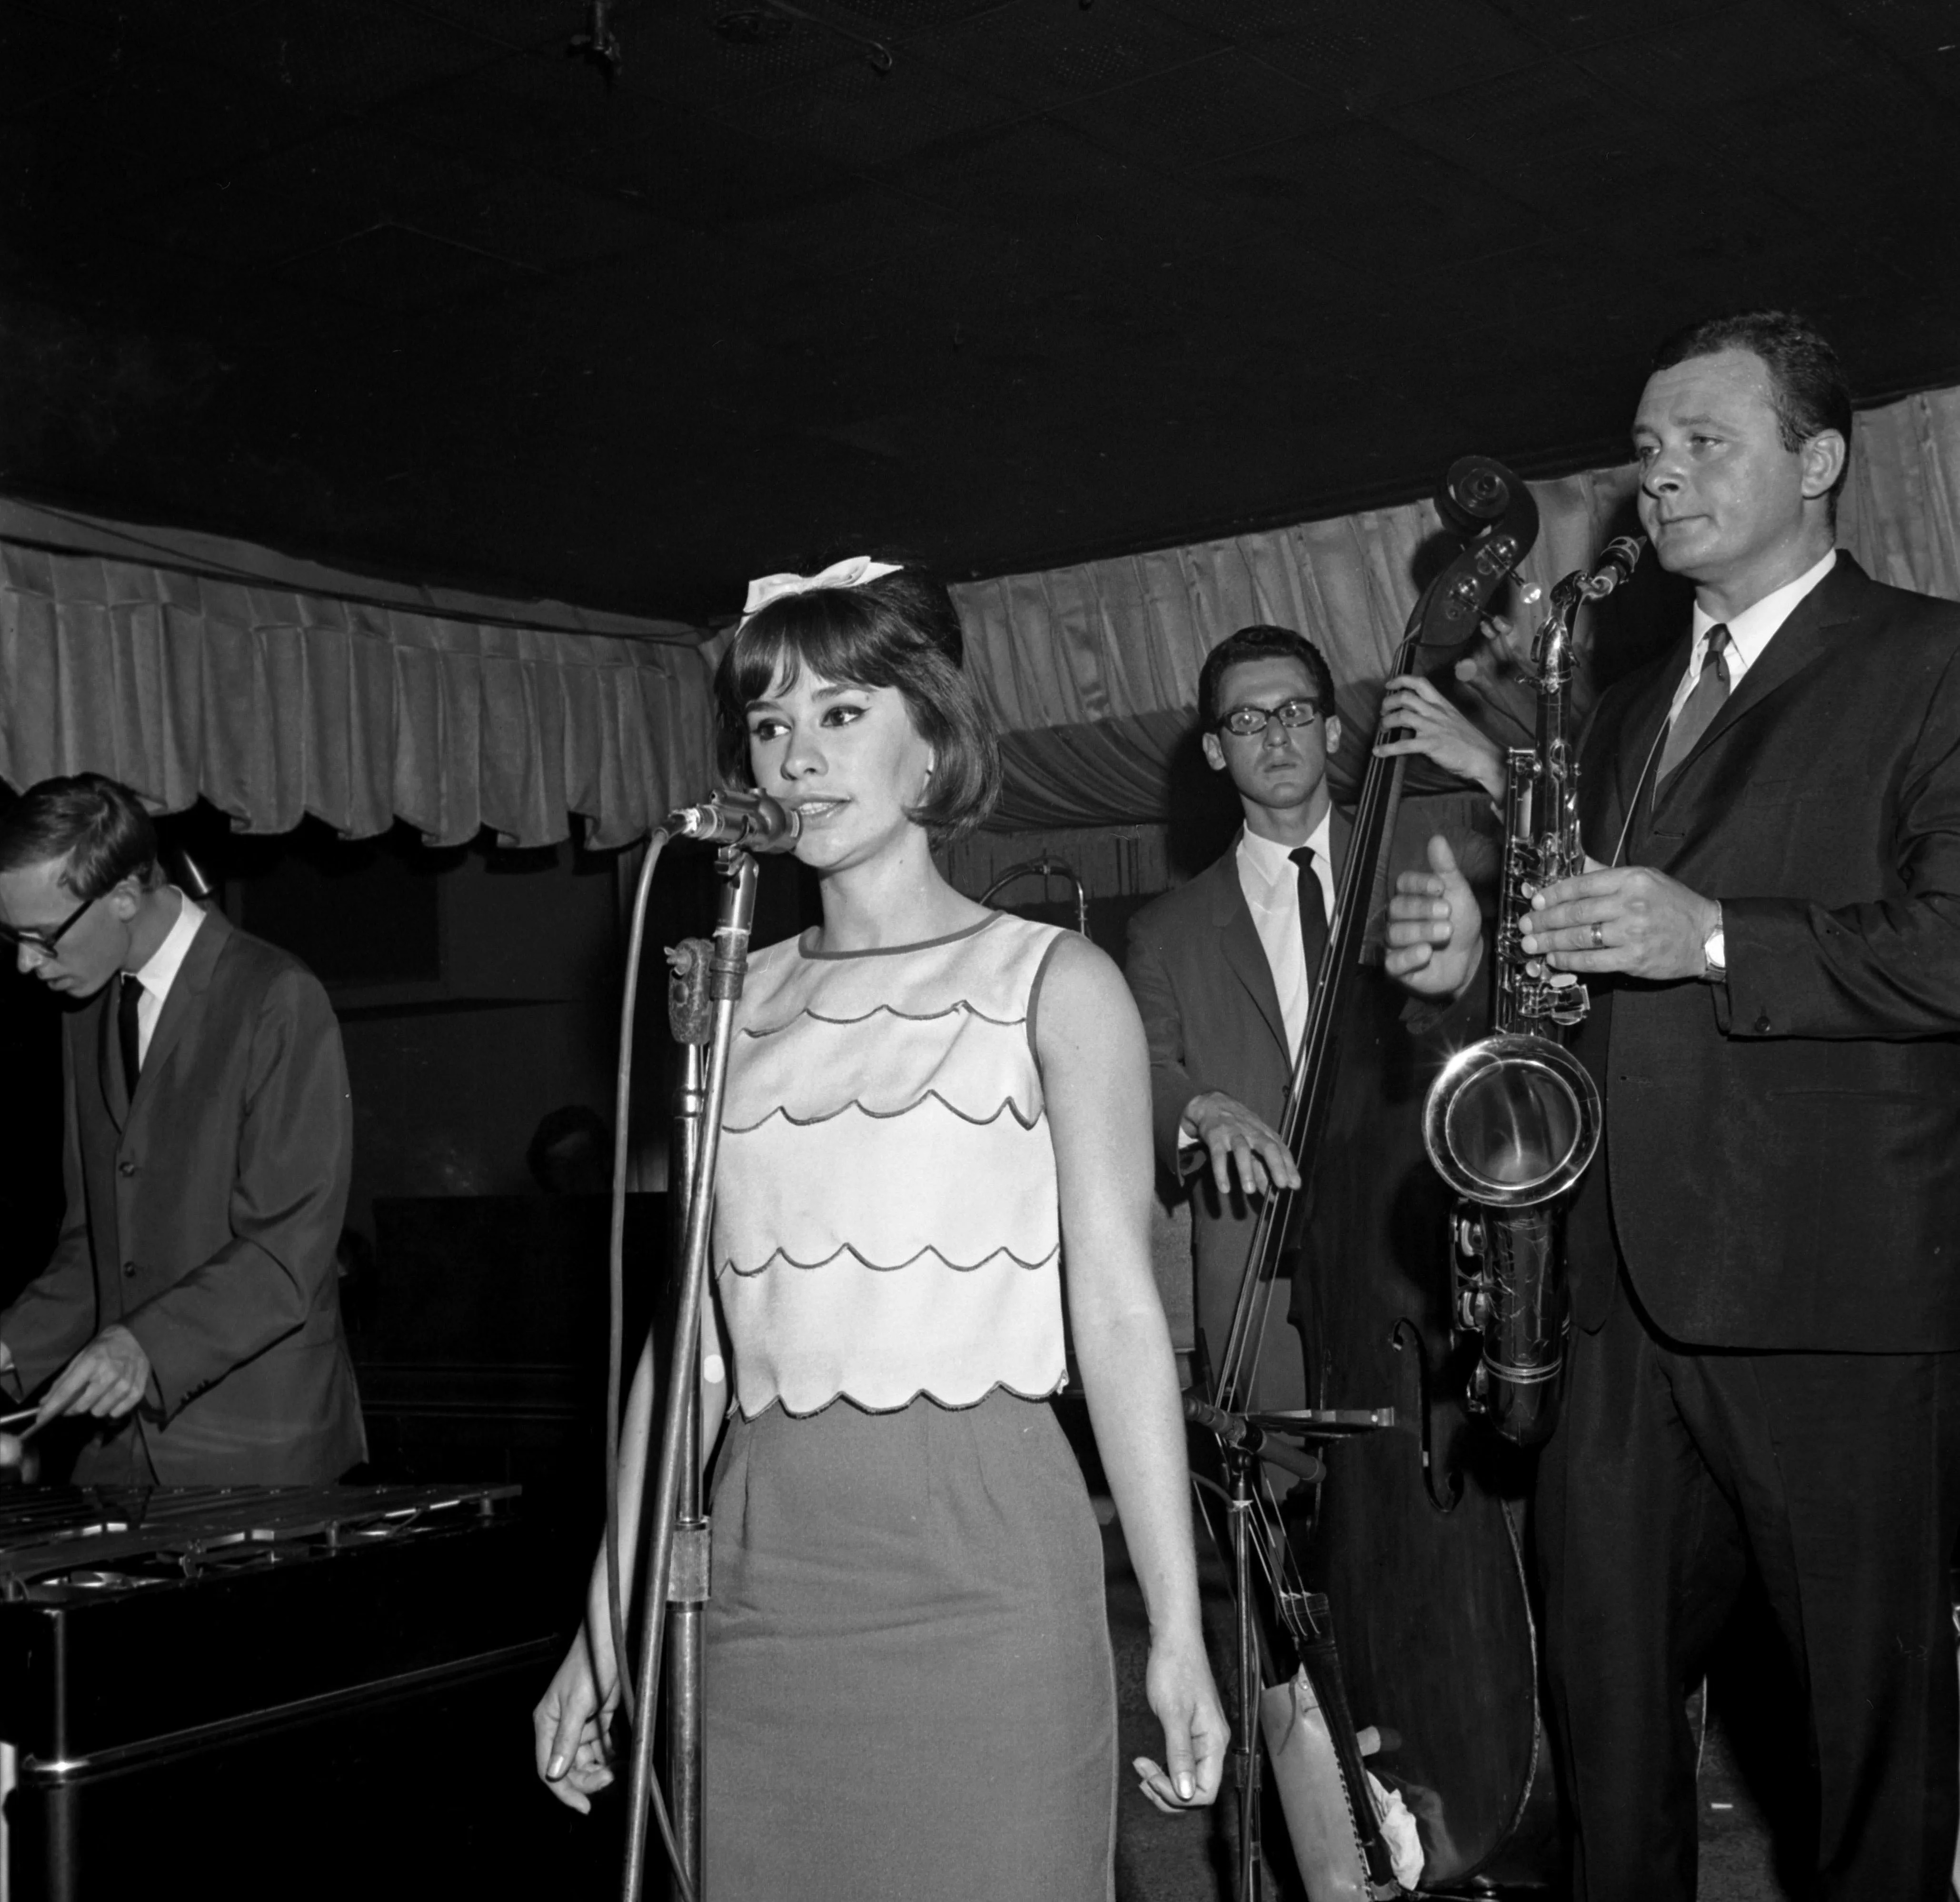 3 스탄 게츠와 함께 협연하는 아스트루드 지우베르투, 1964년 뉴욕 버드랜드 클럽에서.jpg